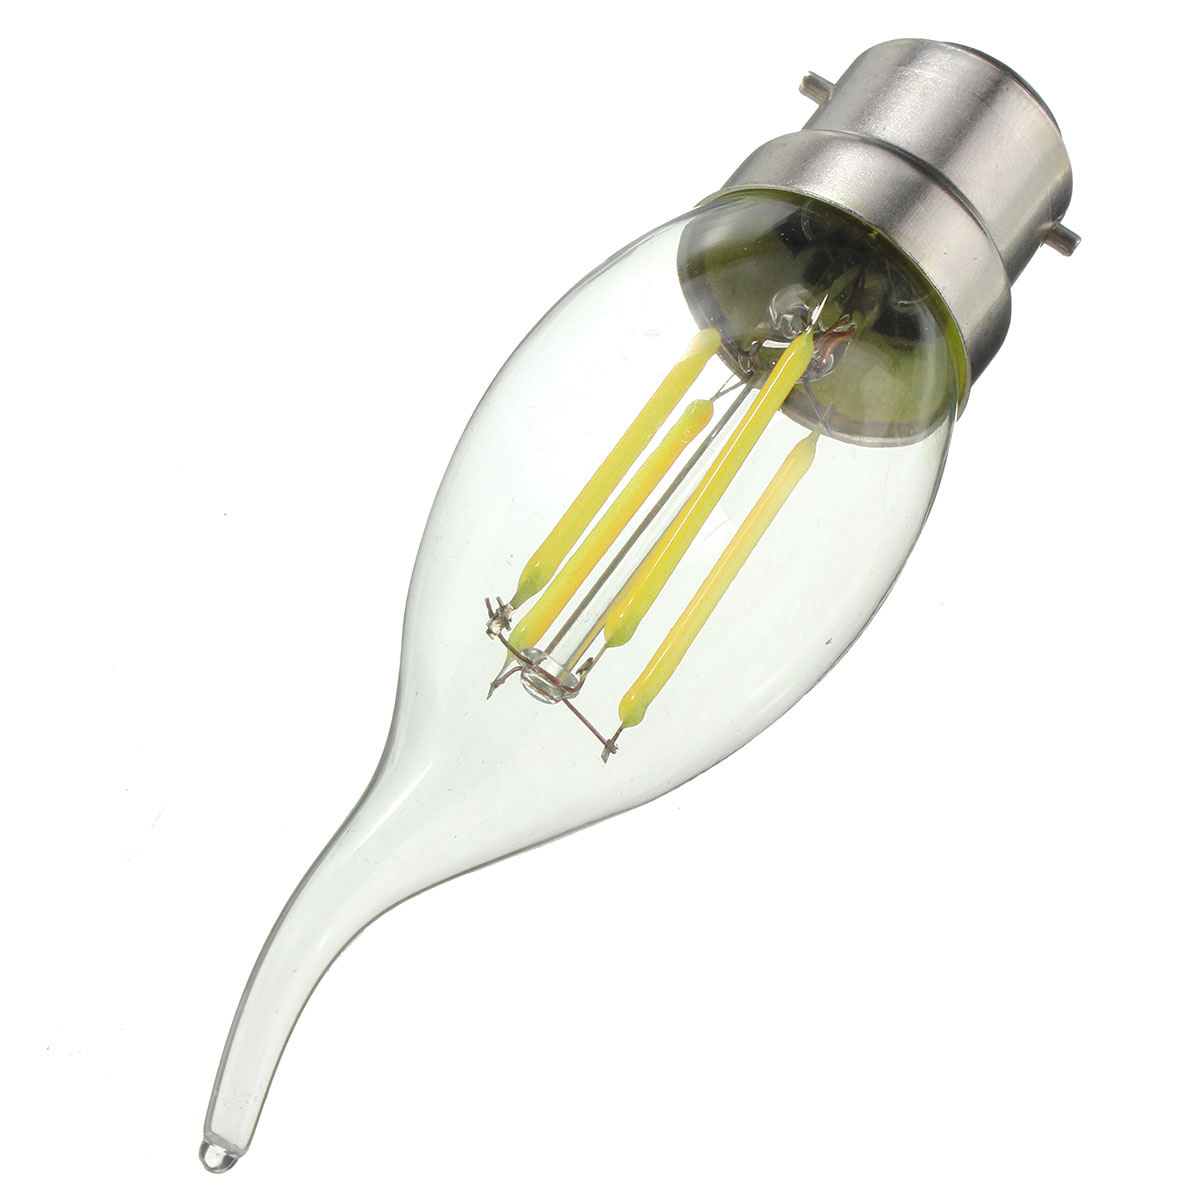 Dimmable-AC220V-B22-C35-4W-Warm-White-LED-Filament-COB-Retro-Edison-Light-Bulb-1072037-4